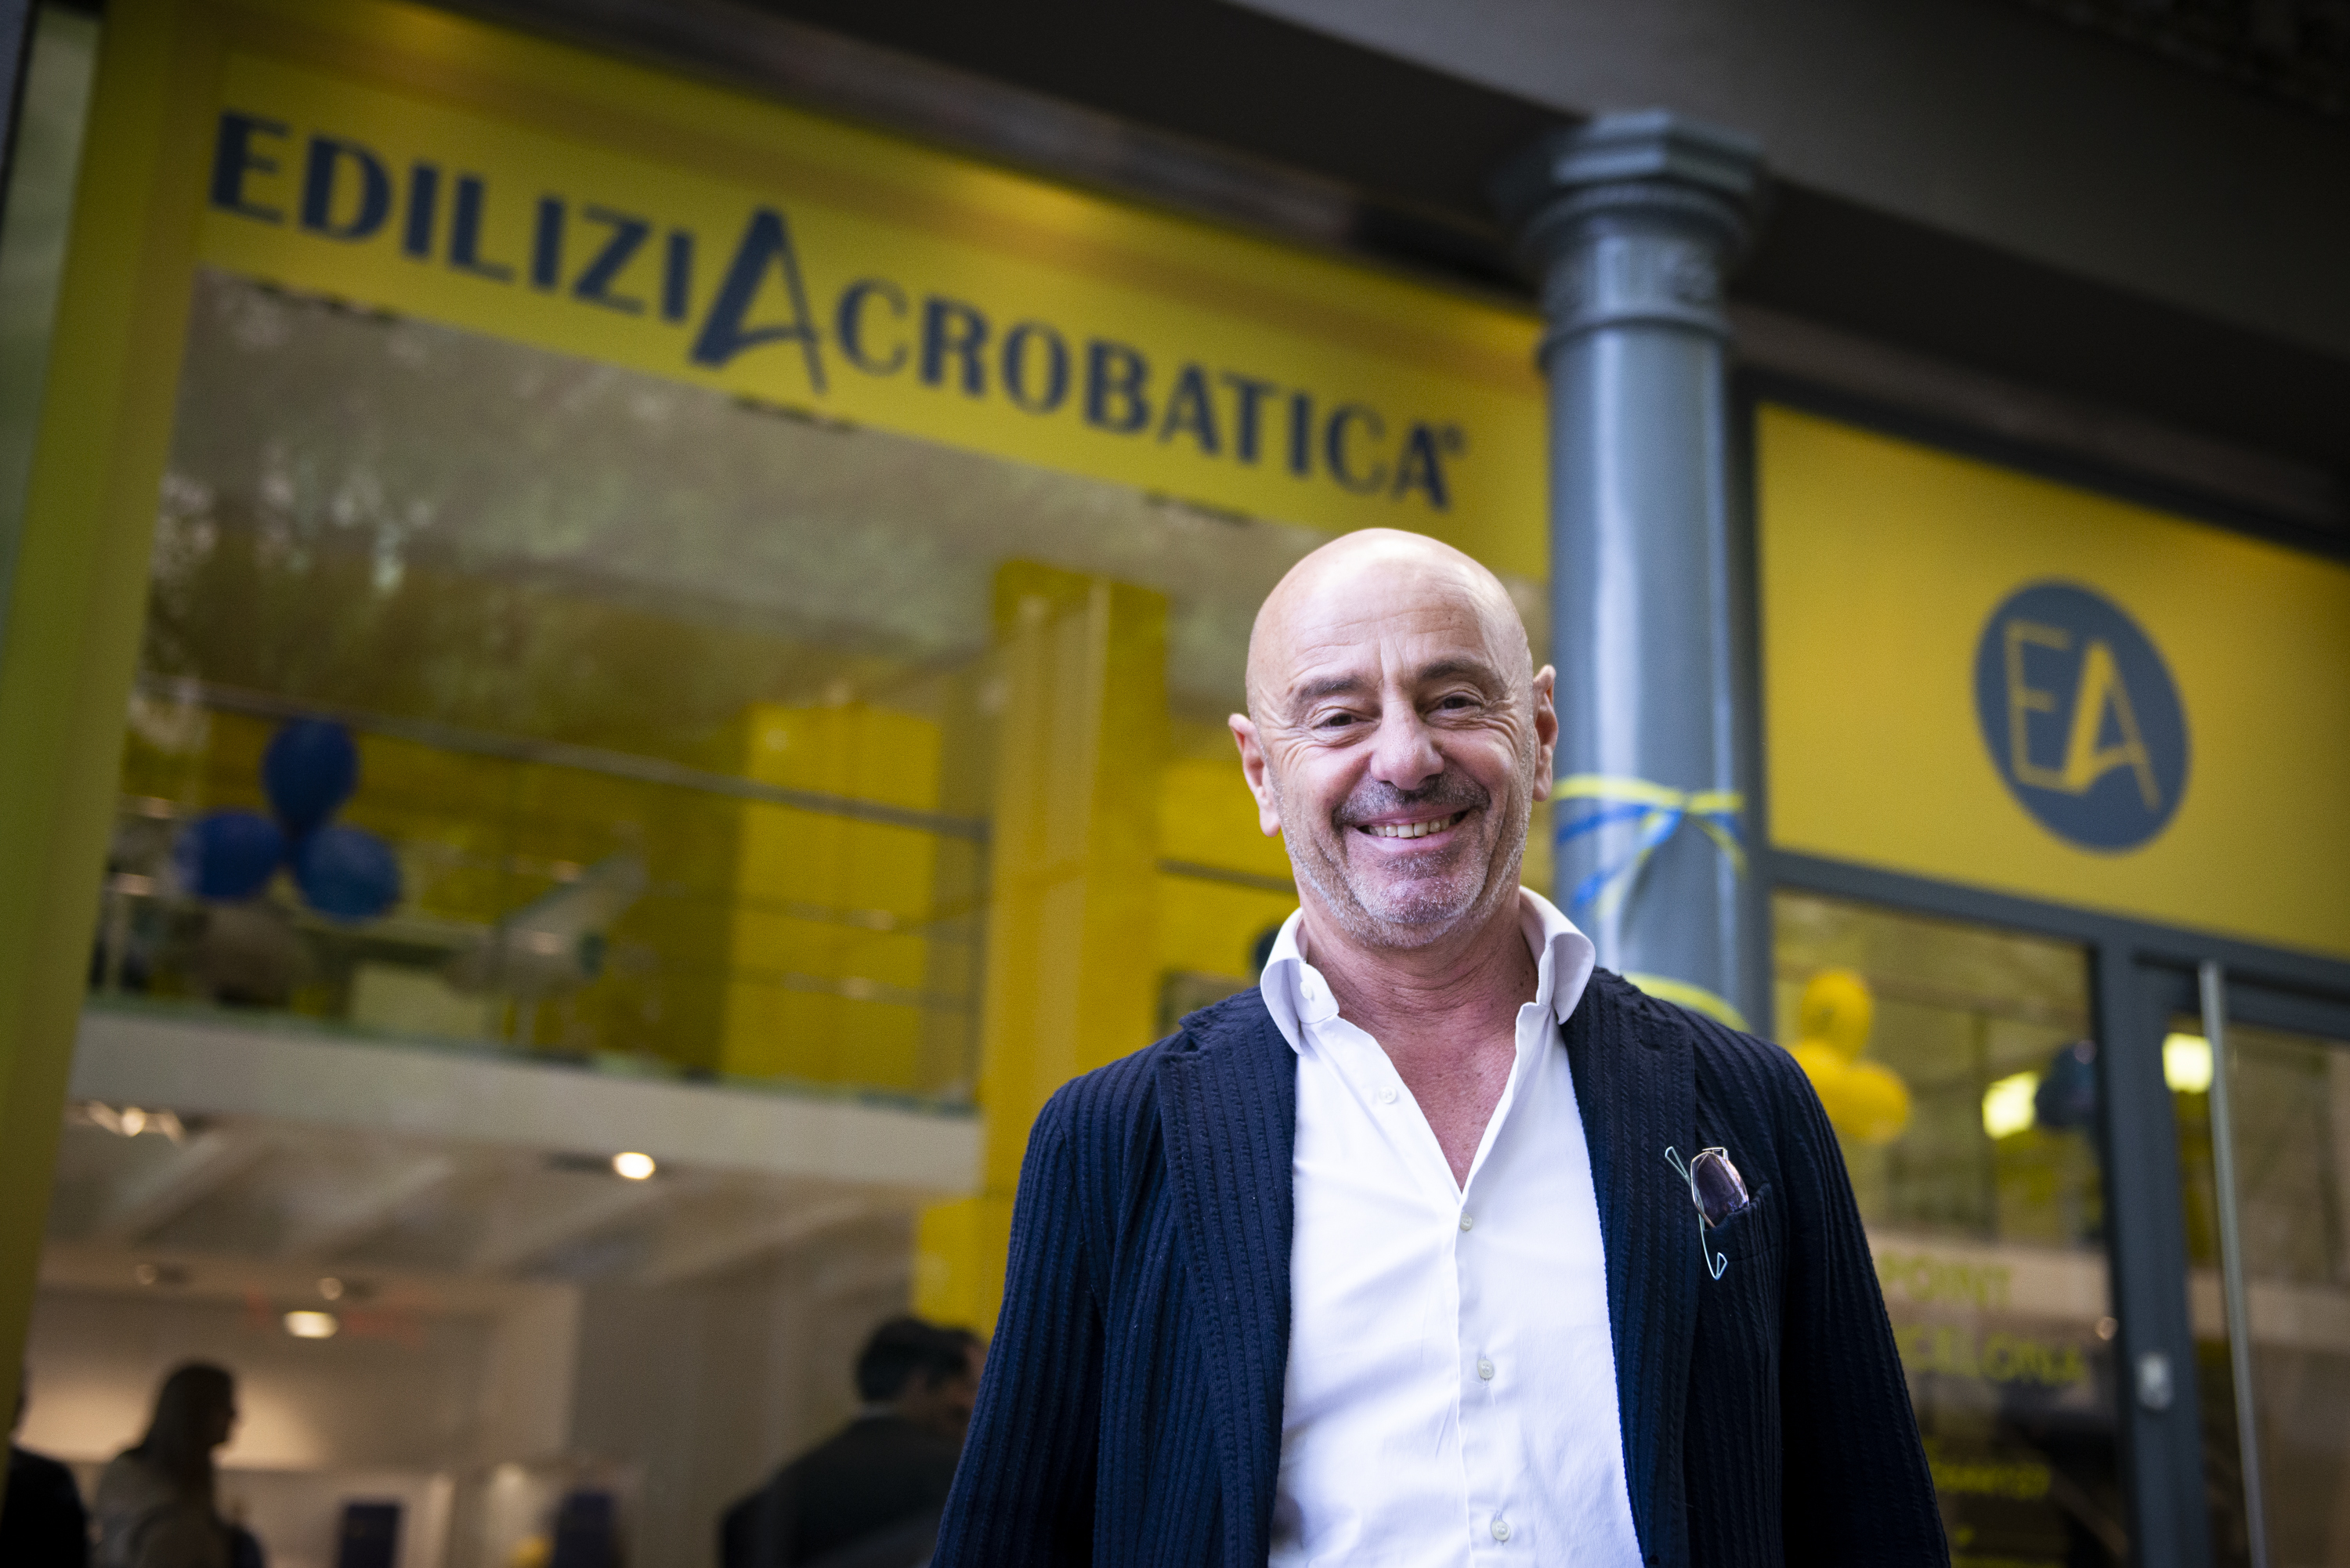 Riccardo Iovino, CEO de EdiliziAcrobatica, en Barcelona.